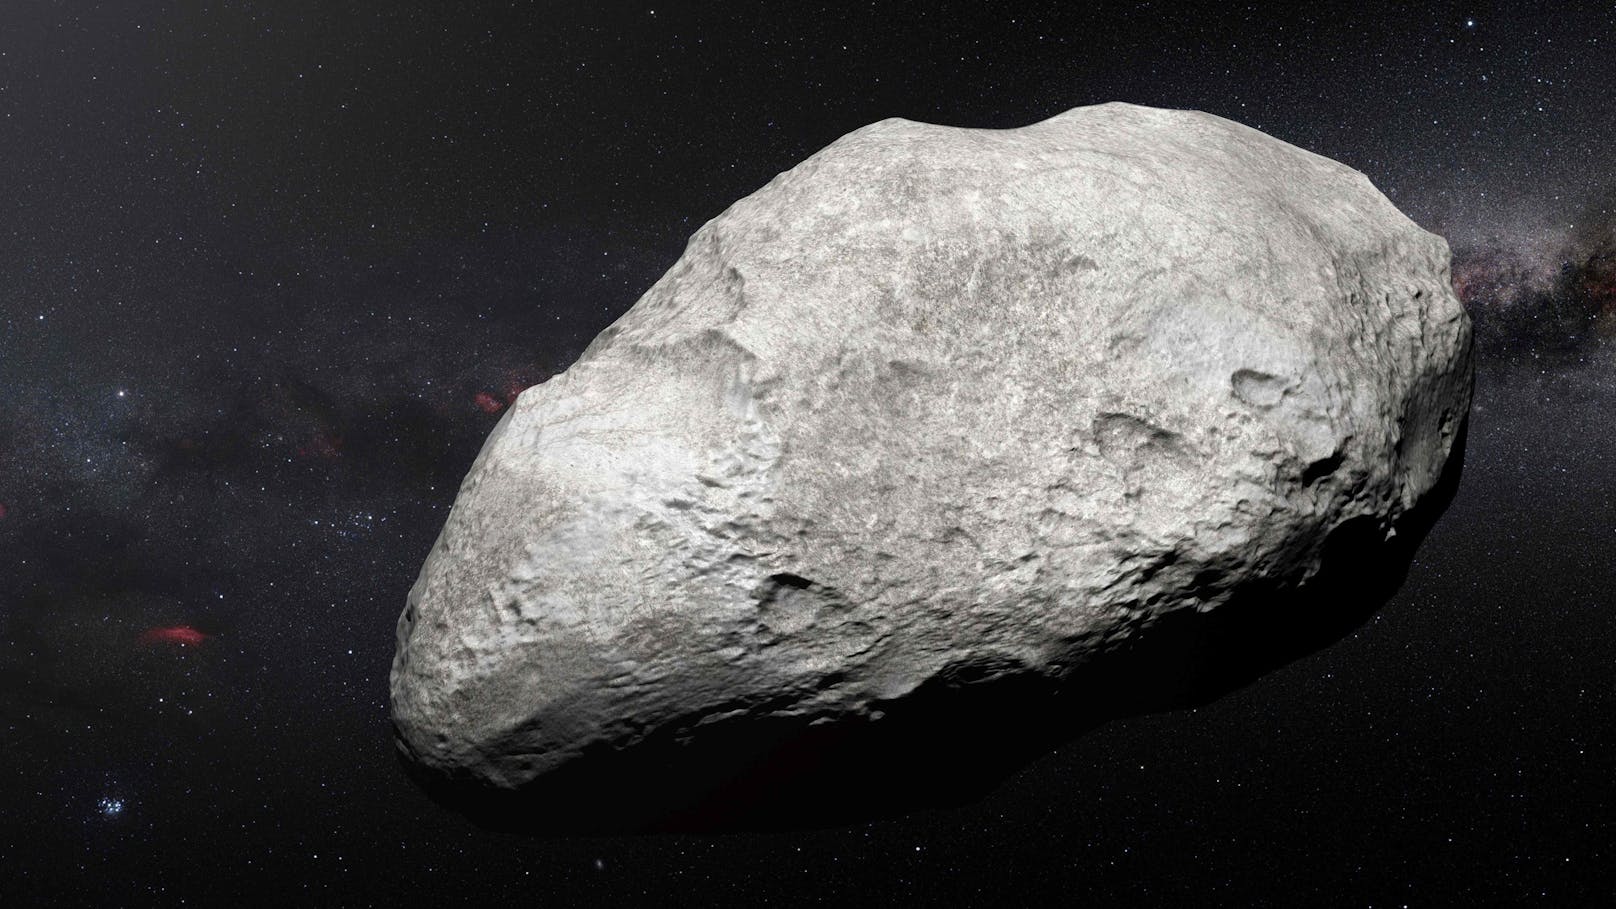 Visualisierung des Asteroiden 2004 EW95 im Kuipergürtel: Die internationale Raumfahrt möchte Asteroiden bald abschießen können.